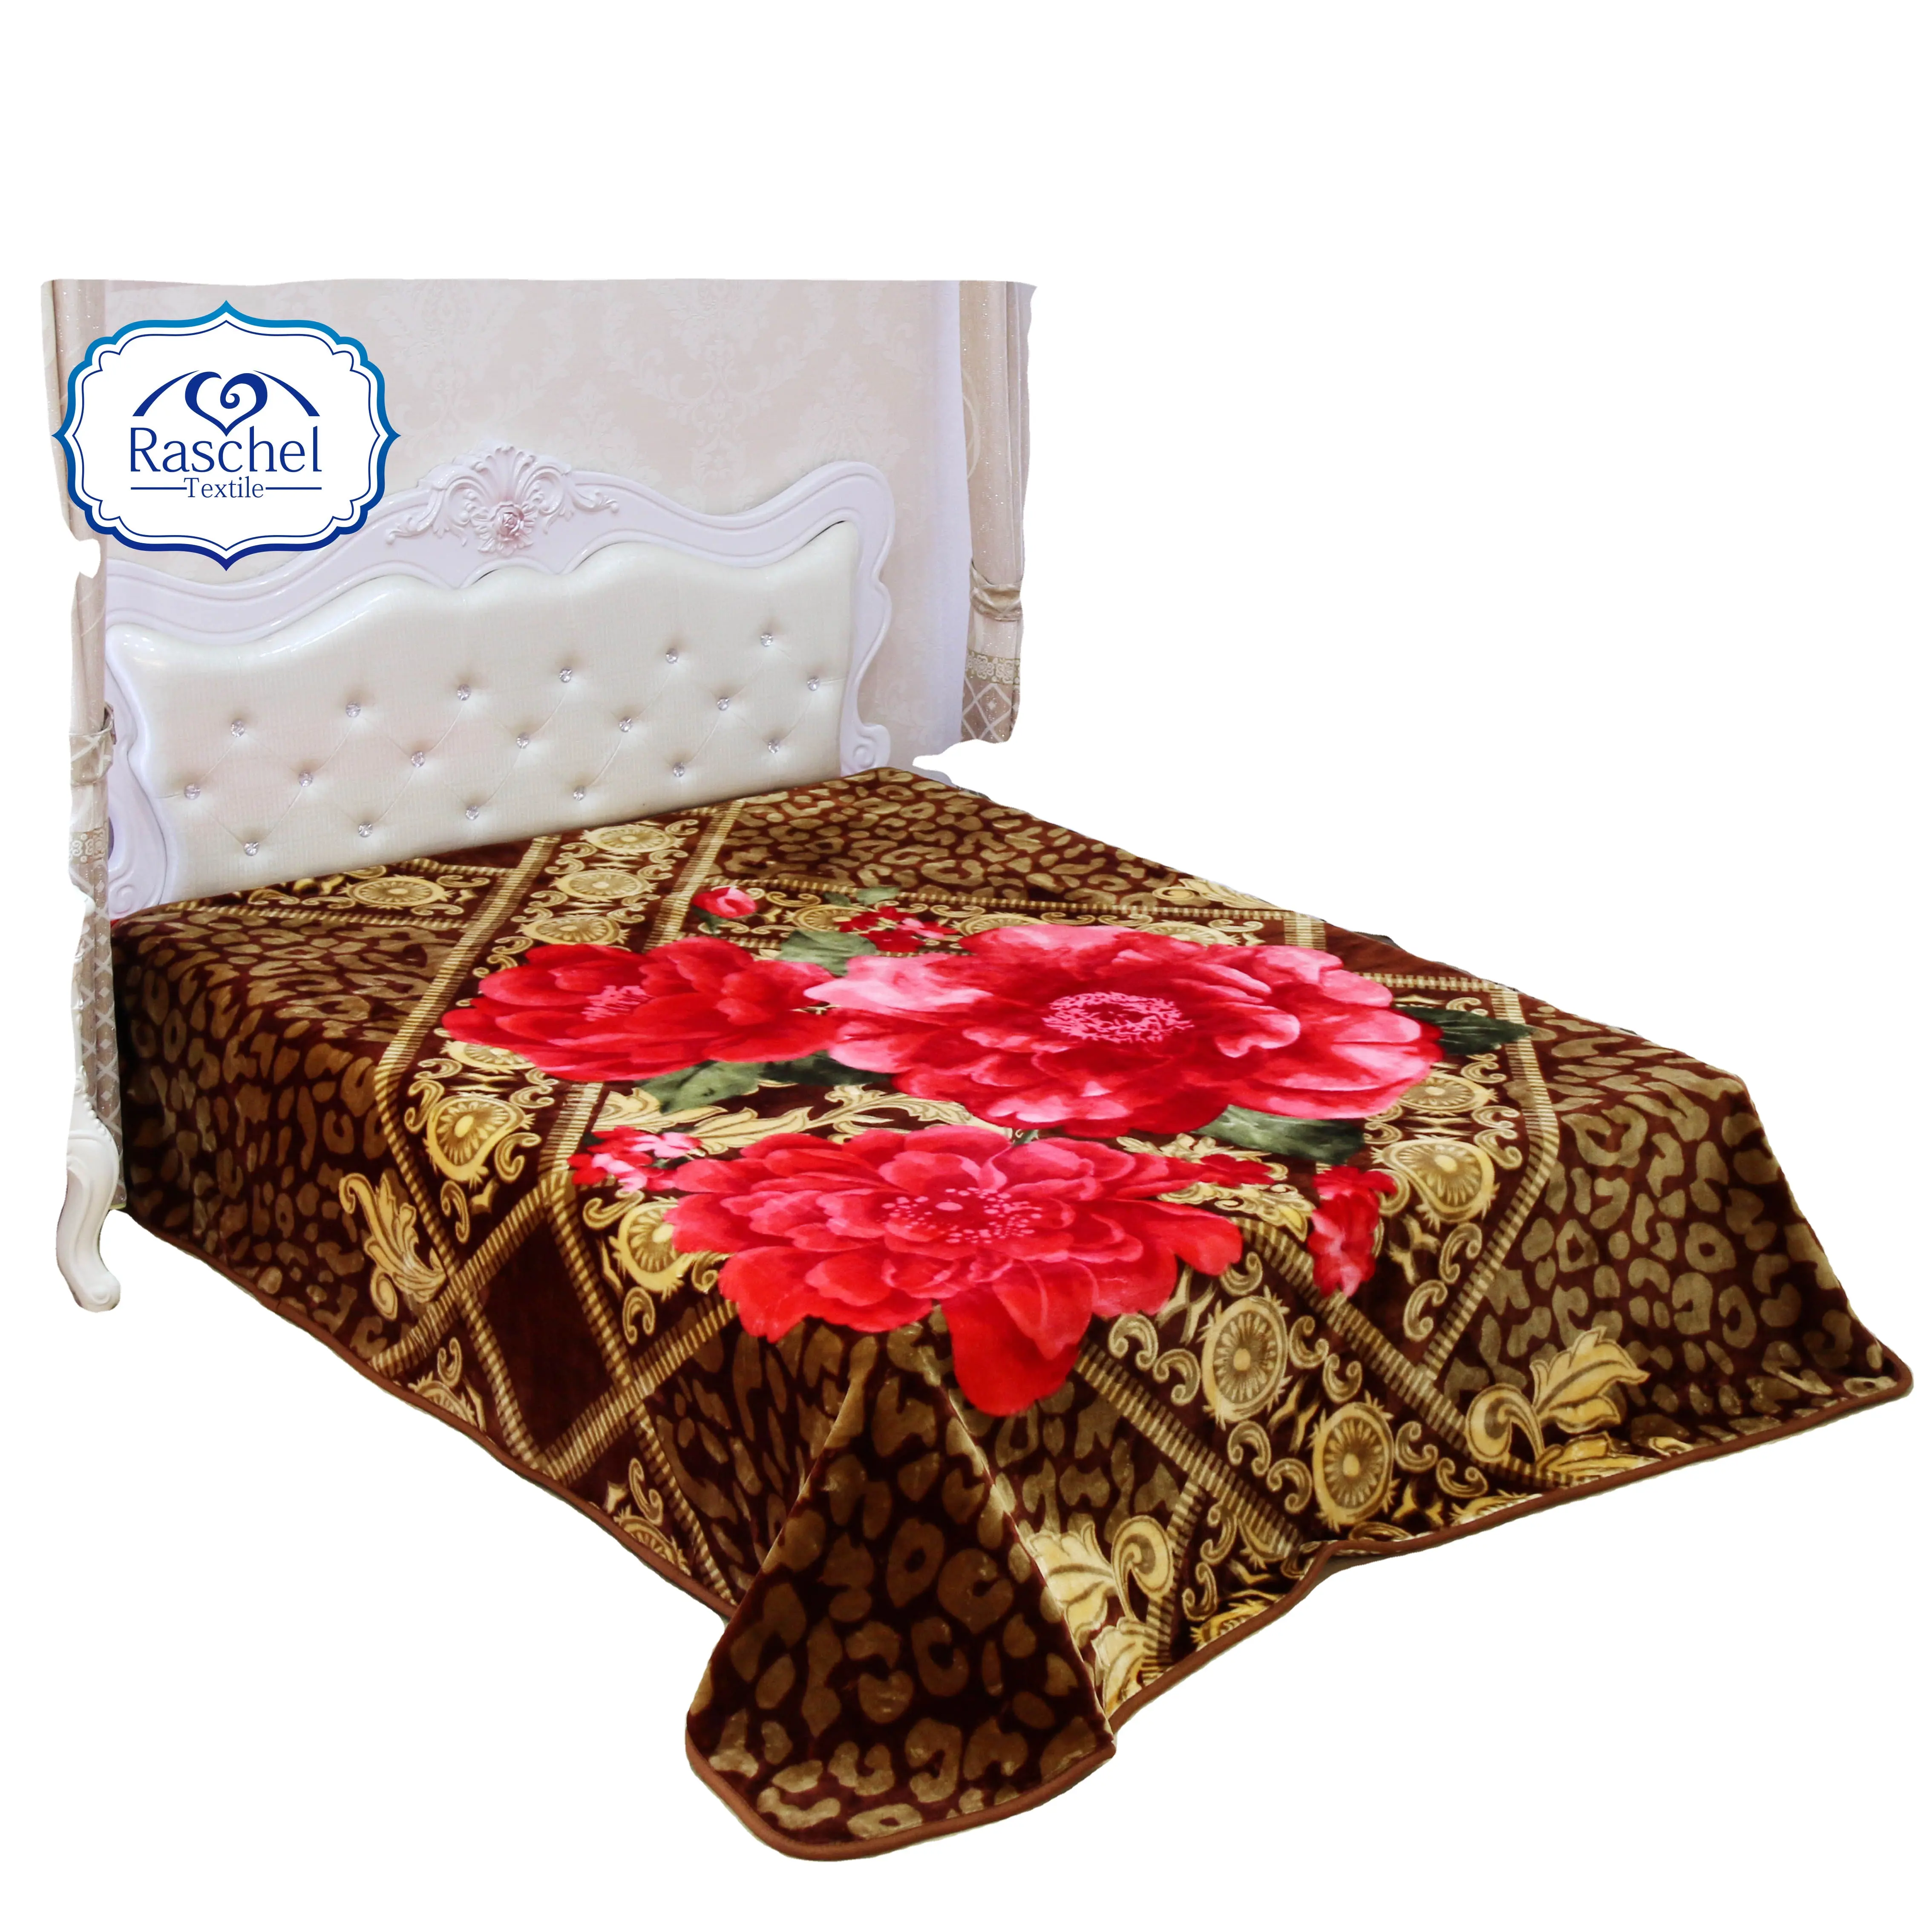 Cobertor Raschel de pelúcia para o mercado árabe tamanho grande 5.5kg 2 camadas 1 lado em relevo HI TOUCH MARCA